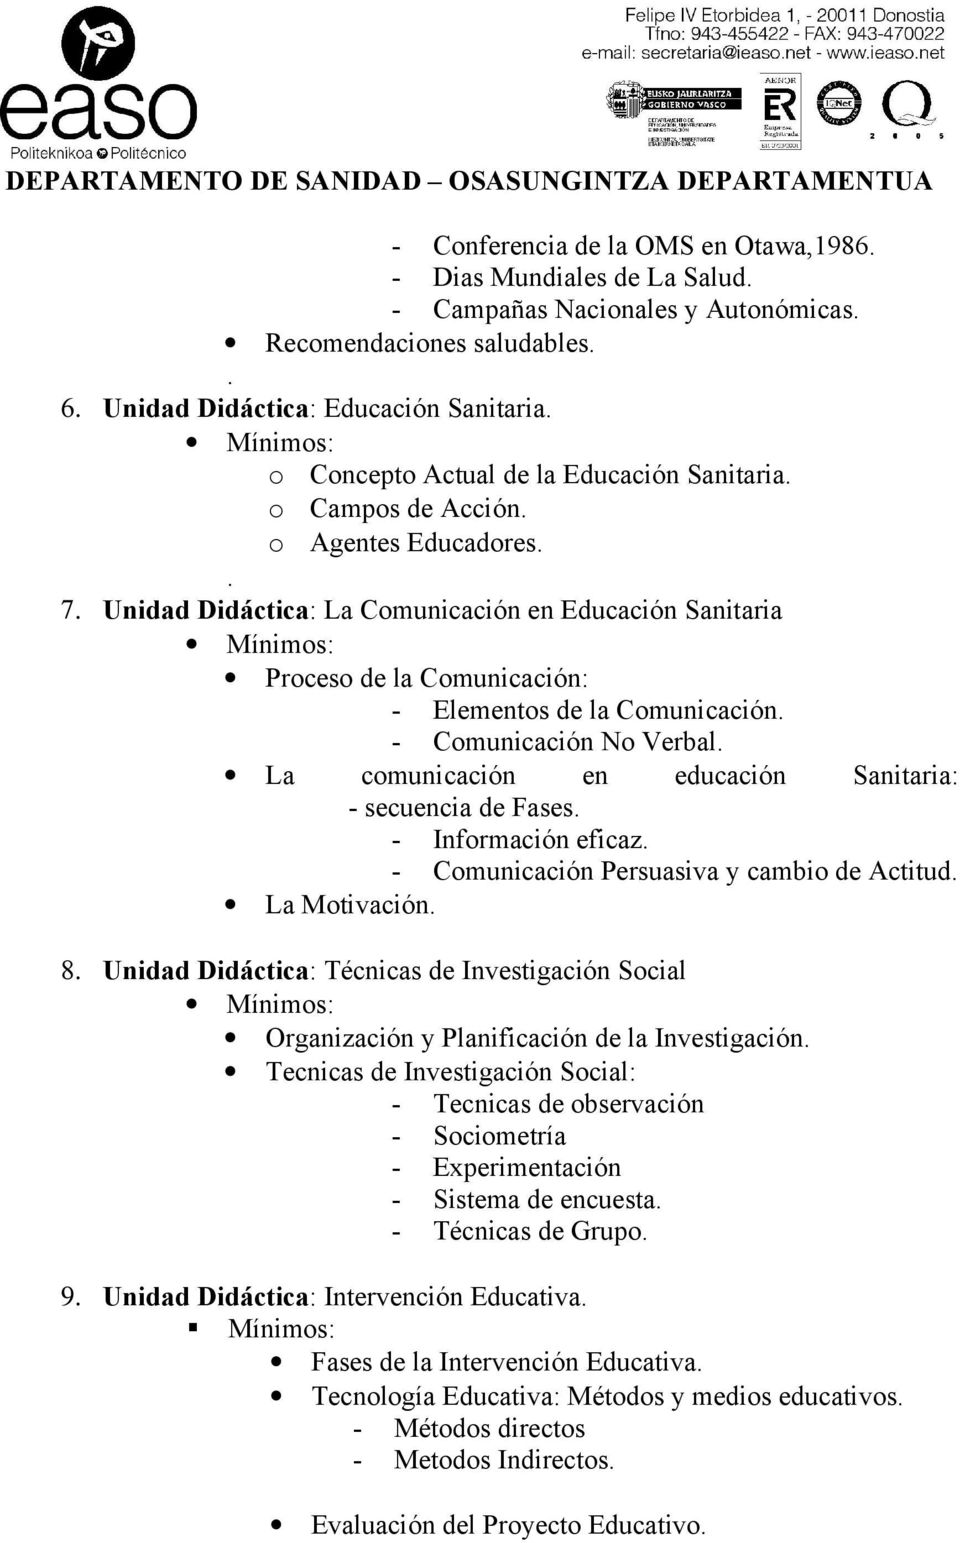 Unidad Didáctica: La Comunicación en Educación Sanitaria Proceso de la Comunicación: - Elementos de la Comunicación. - Comunicación No Verbal.